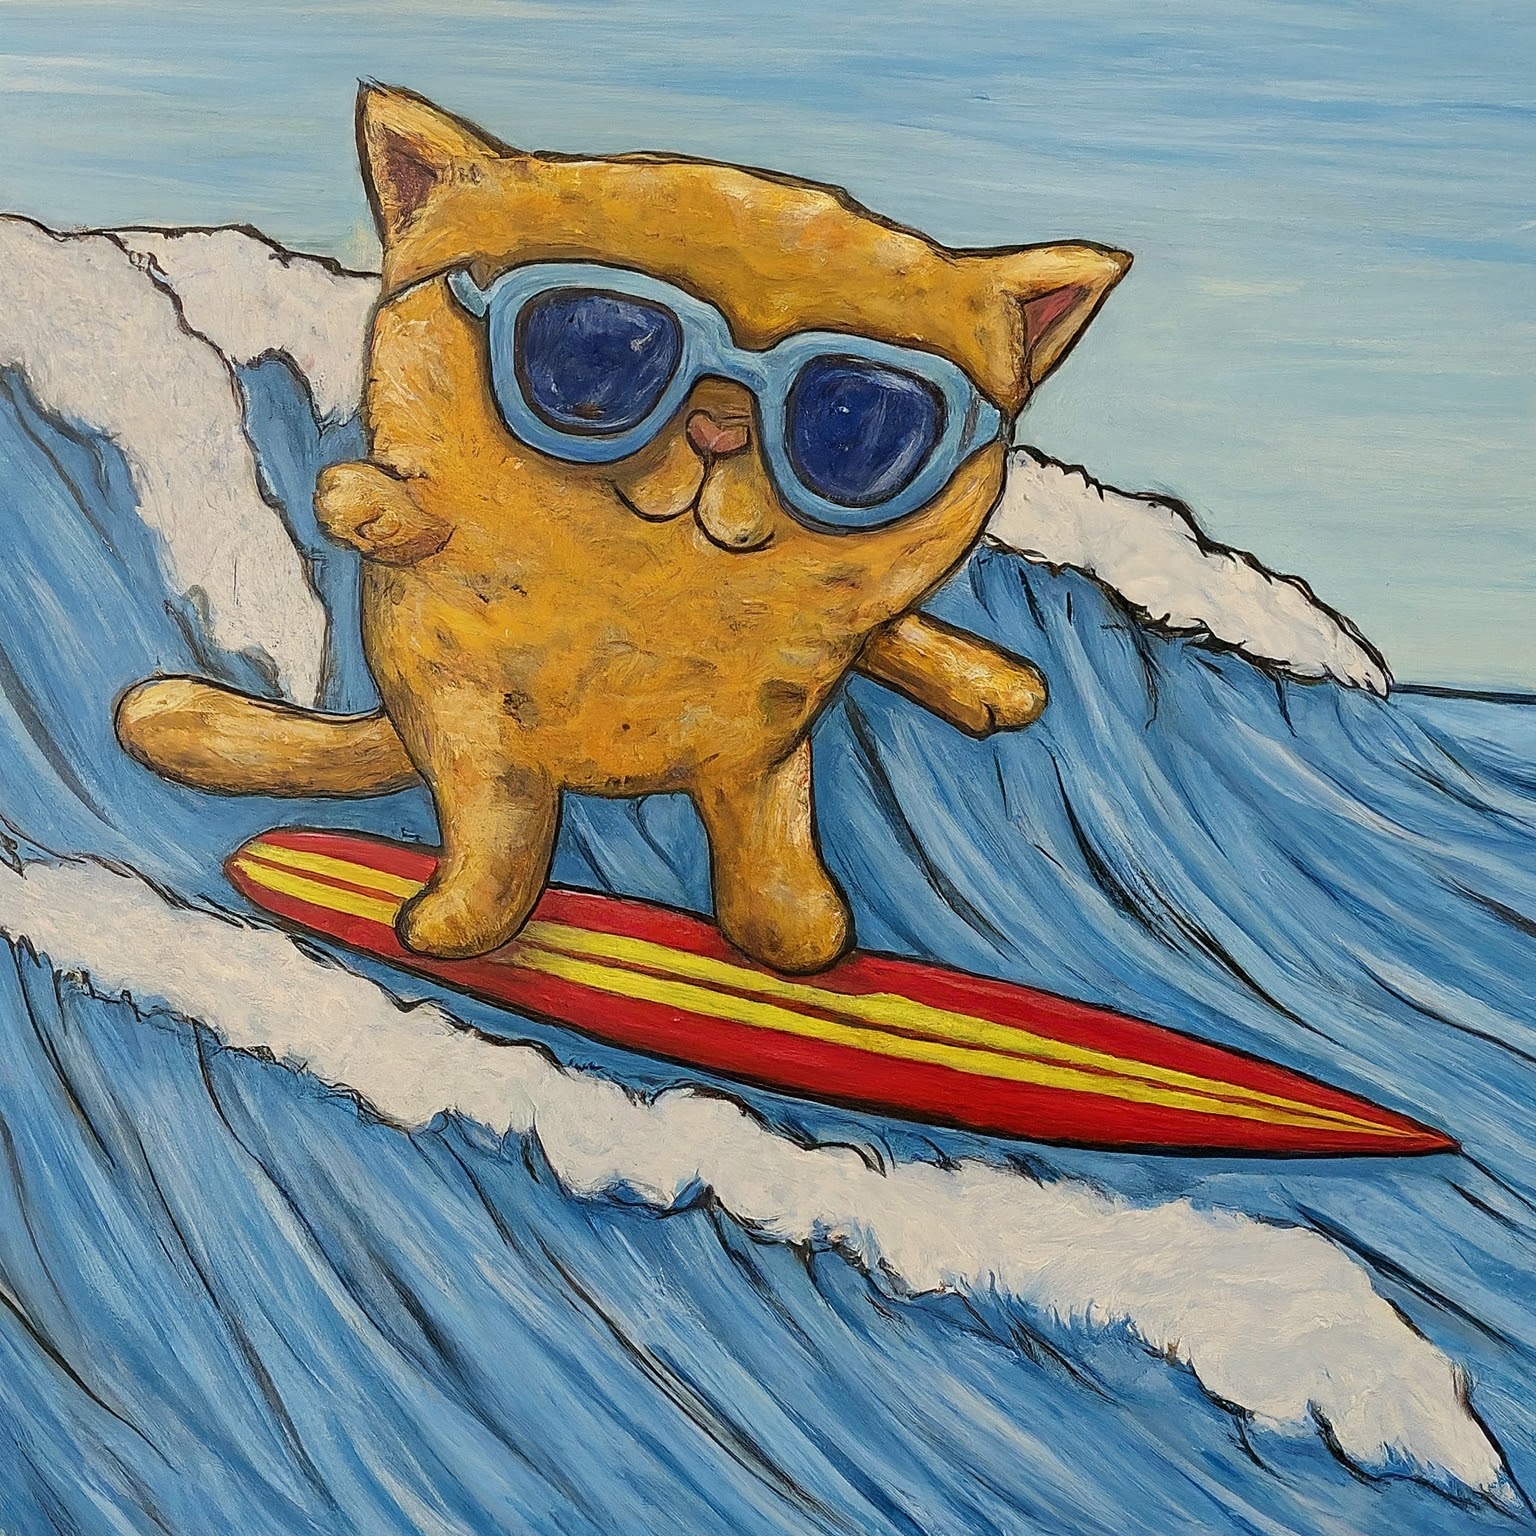 A Cat Surfer Riding A Wave.